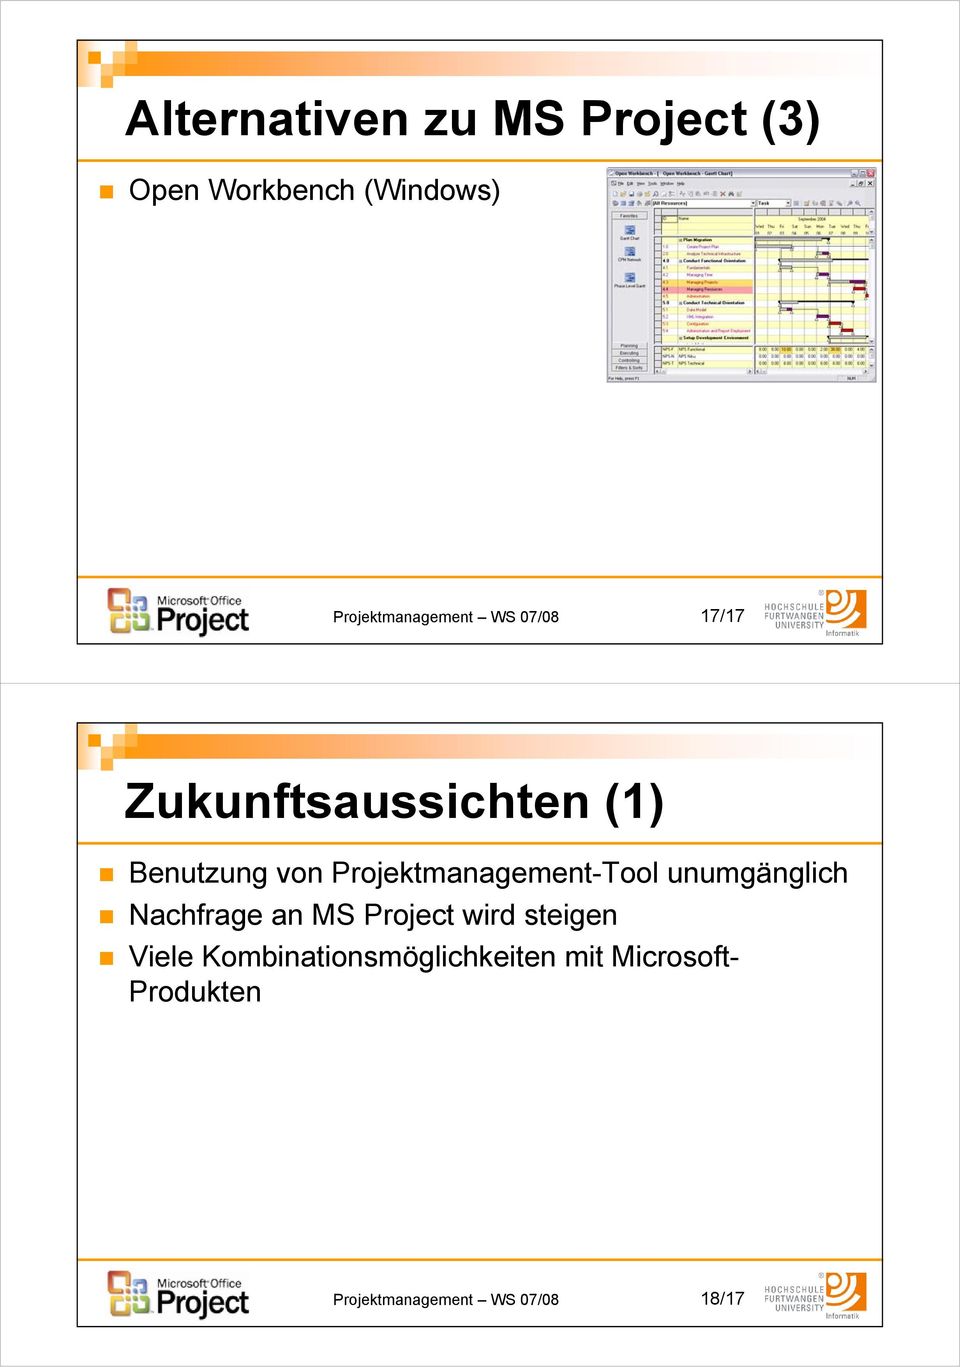 Projektmanagement-Tool unumgänglich Nachfrage an MS Project wird